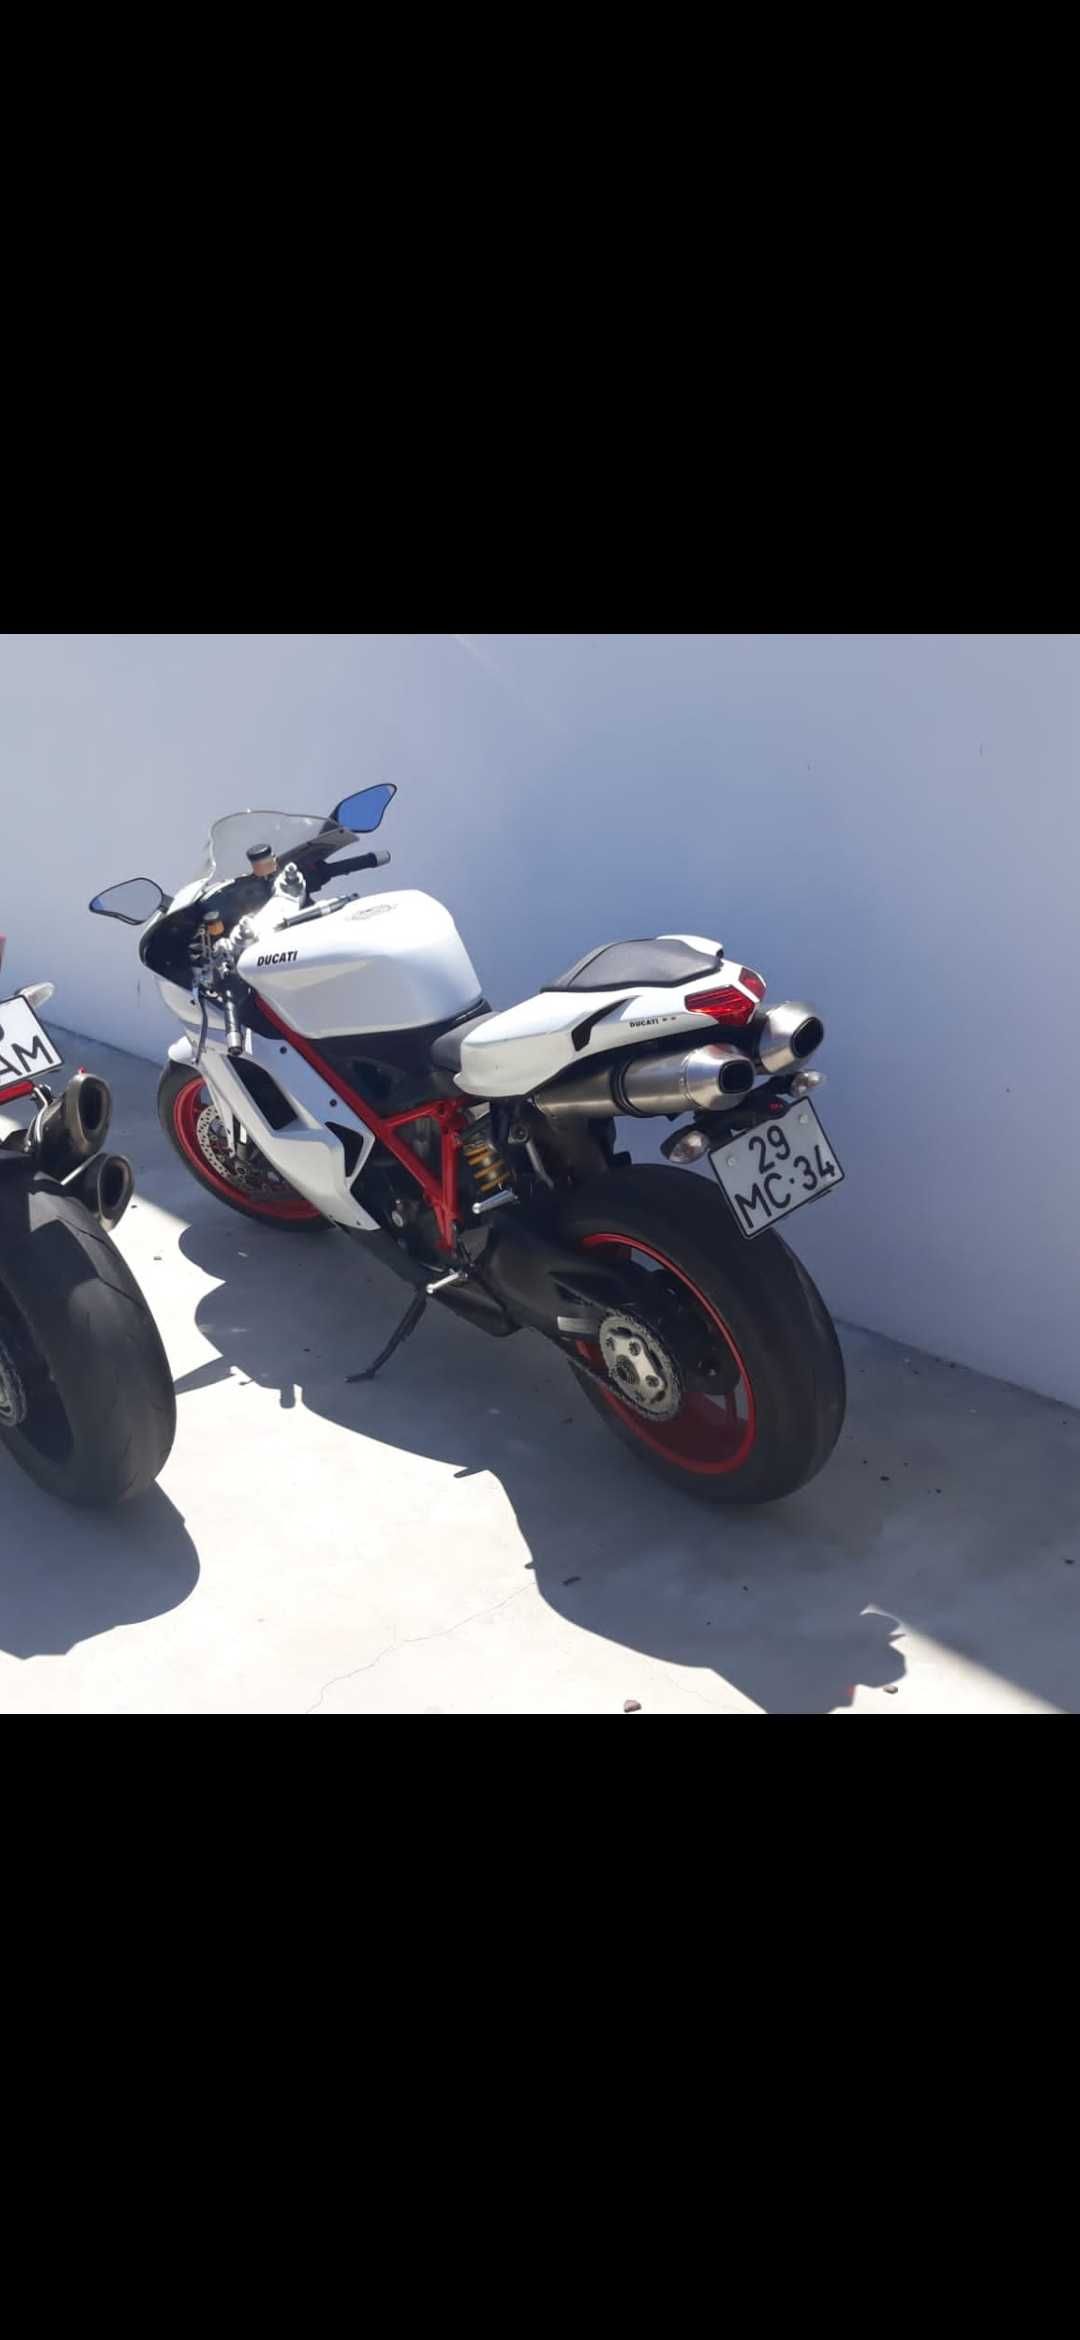 Ducati 848 super bike Evo